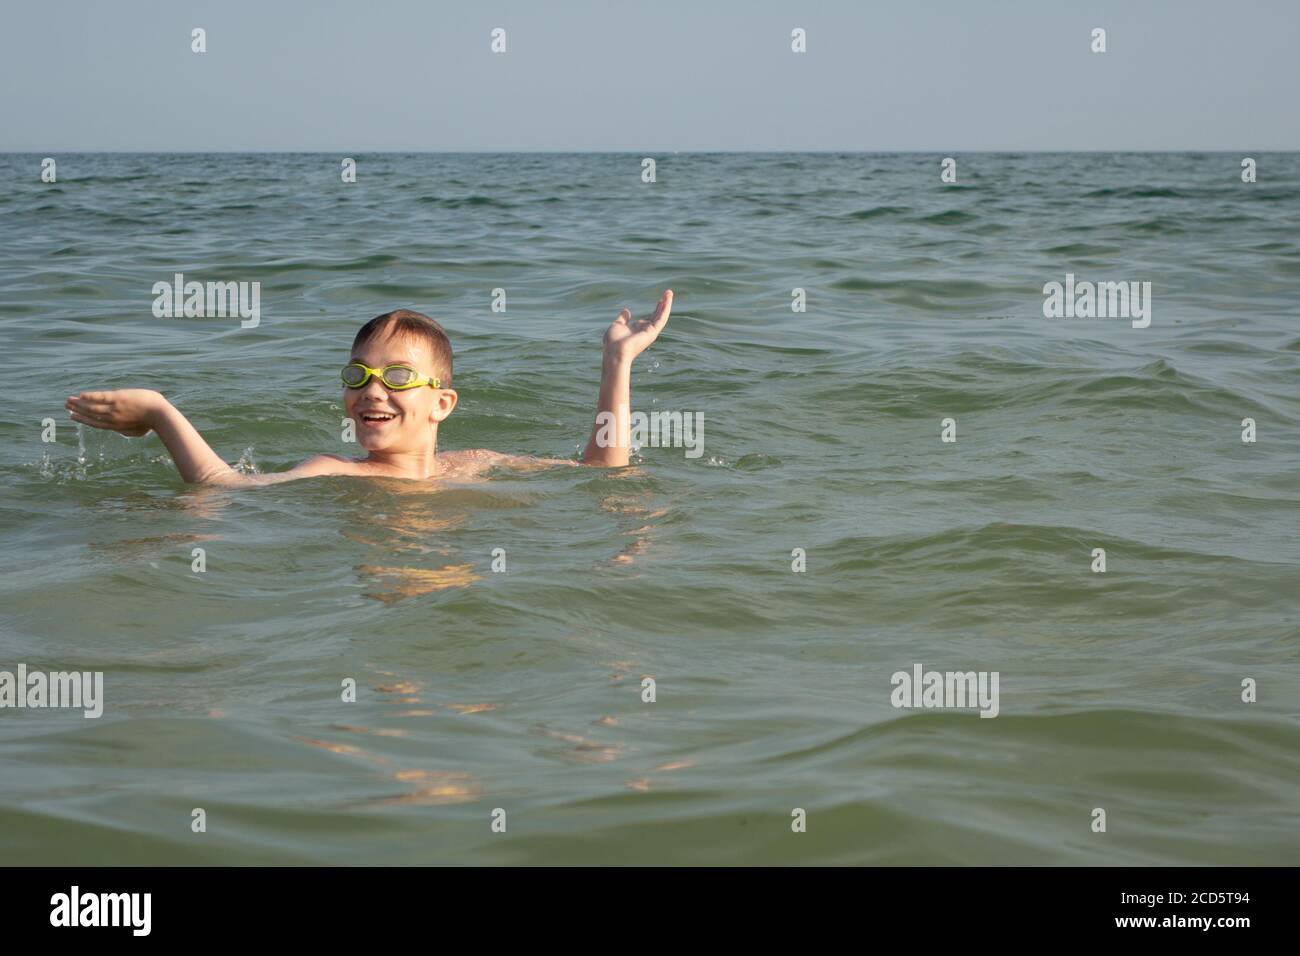 Ein 10-jähriger Junge tauchte aus dem Wasser ins Meer auf und zeigt mit seinen Händen, welche großen Fische er sah. Stockfoto